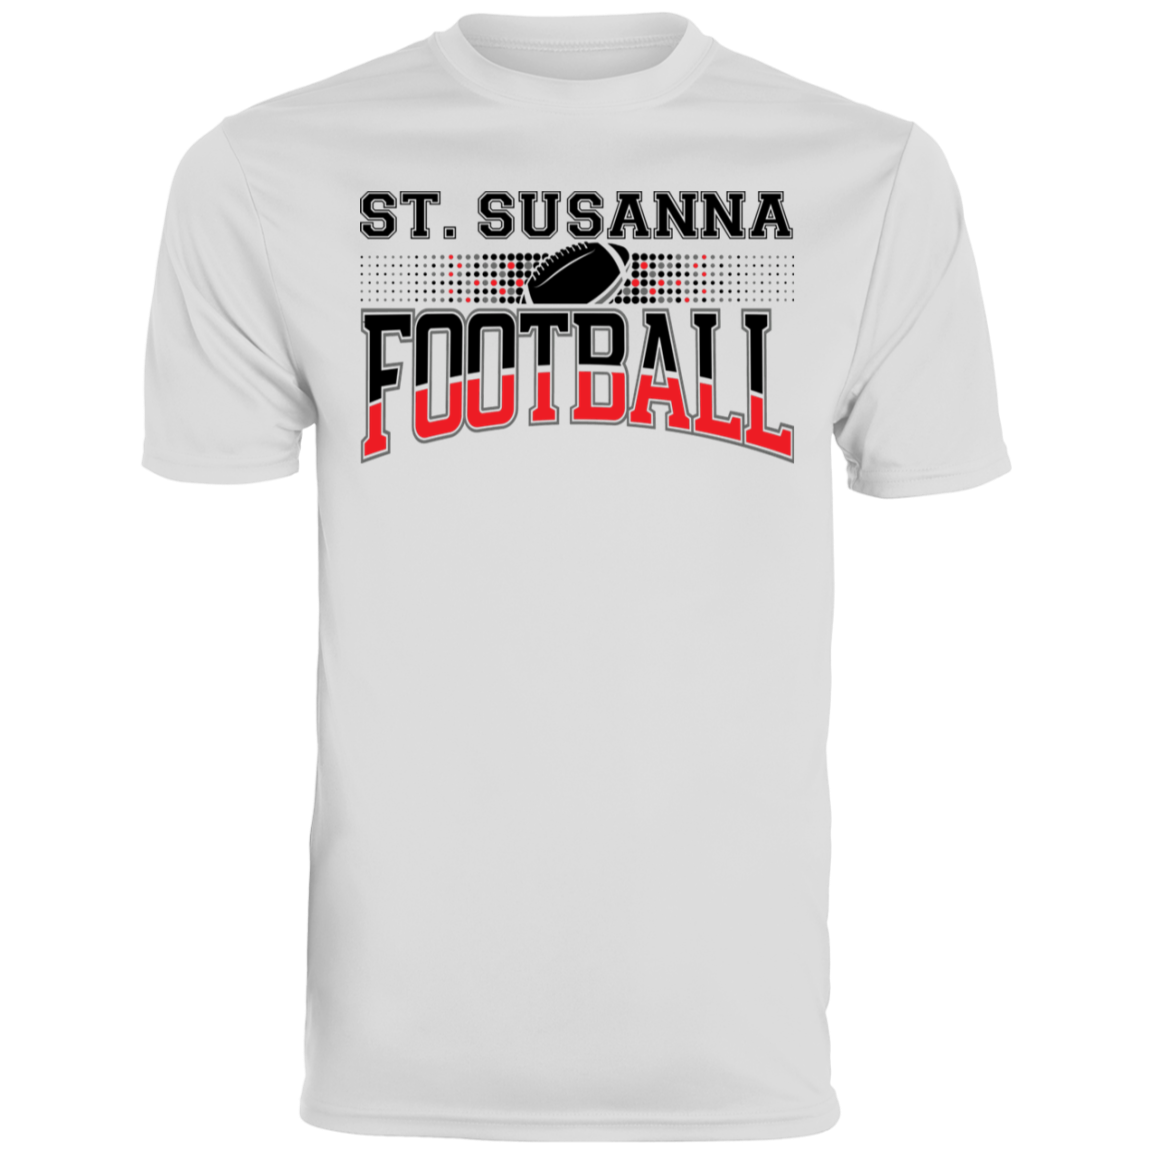 St. Susanna Football Men's Moisture-Wicking Tee